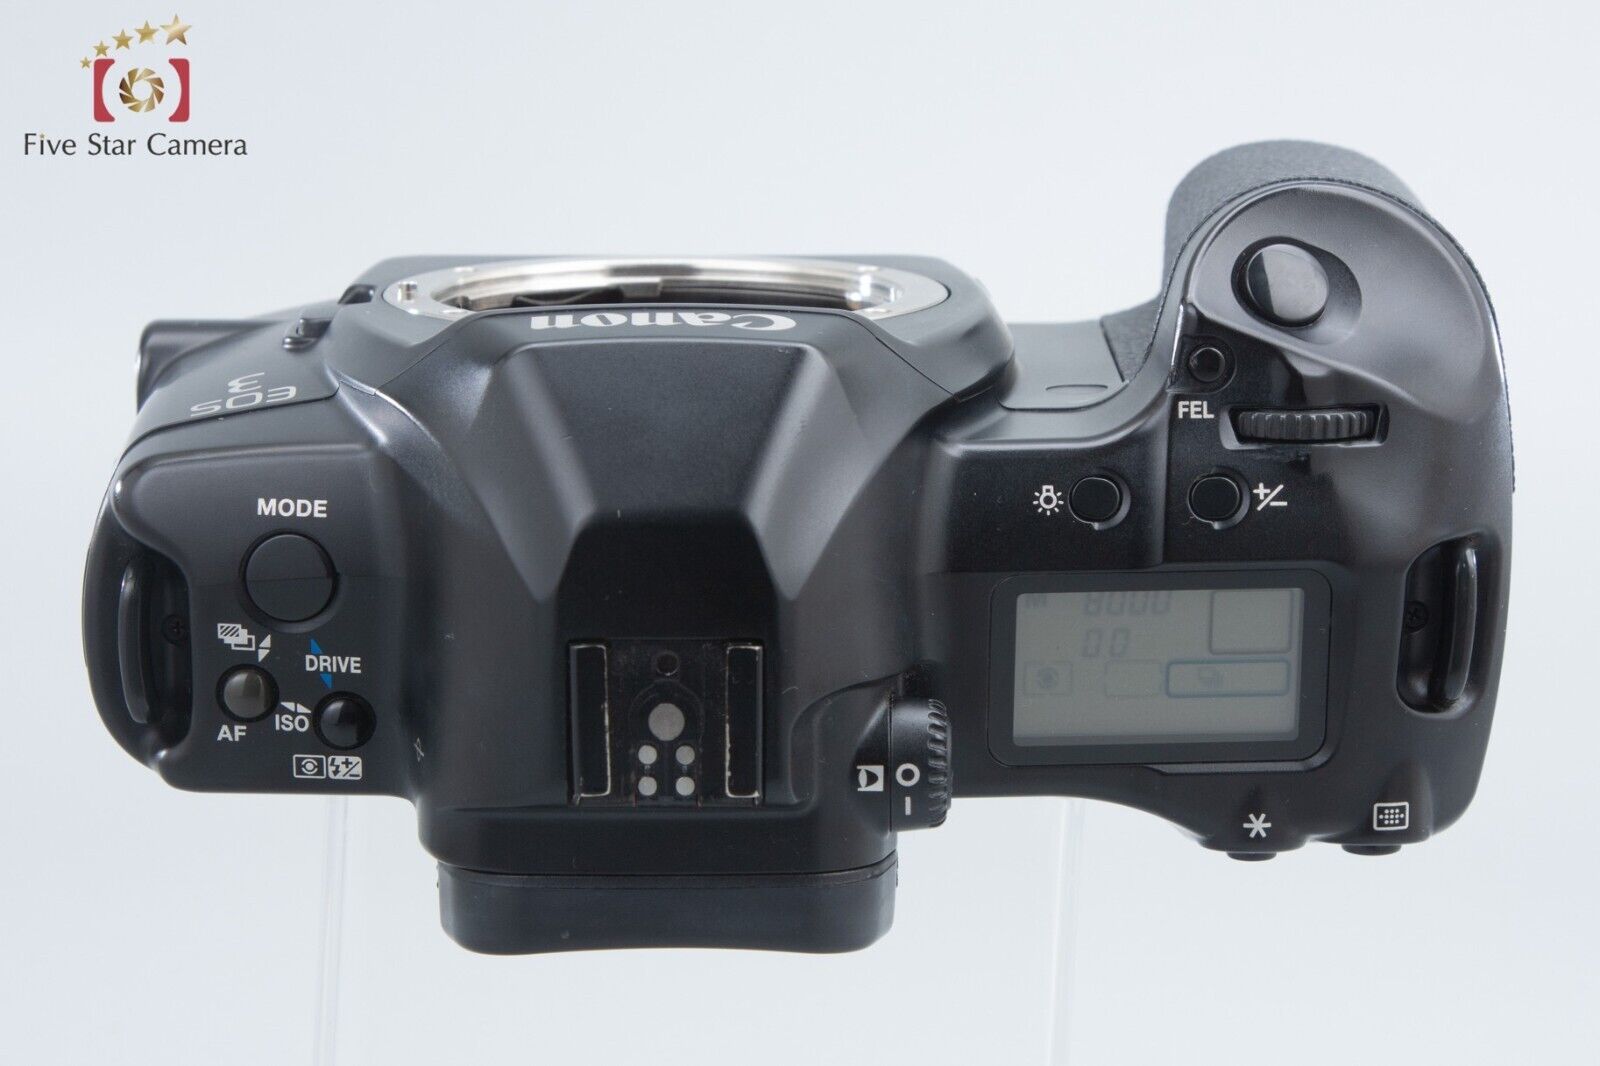 Canon EOS 3 35mm SLR Film Camera Body